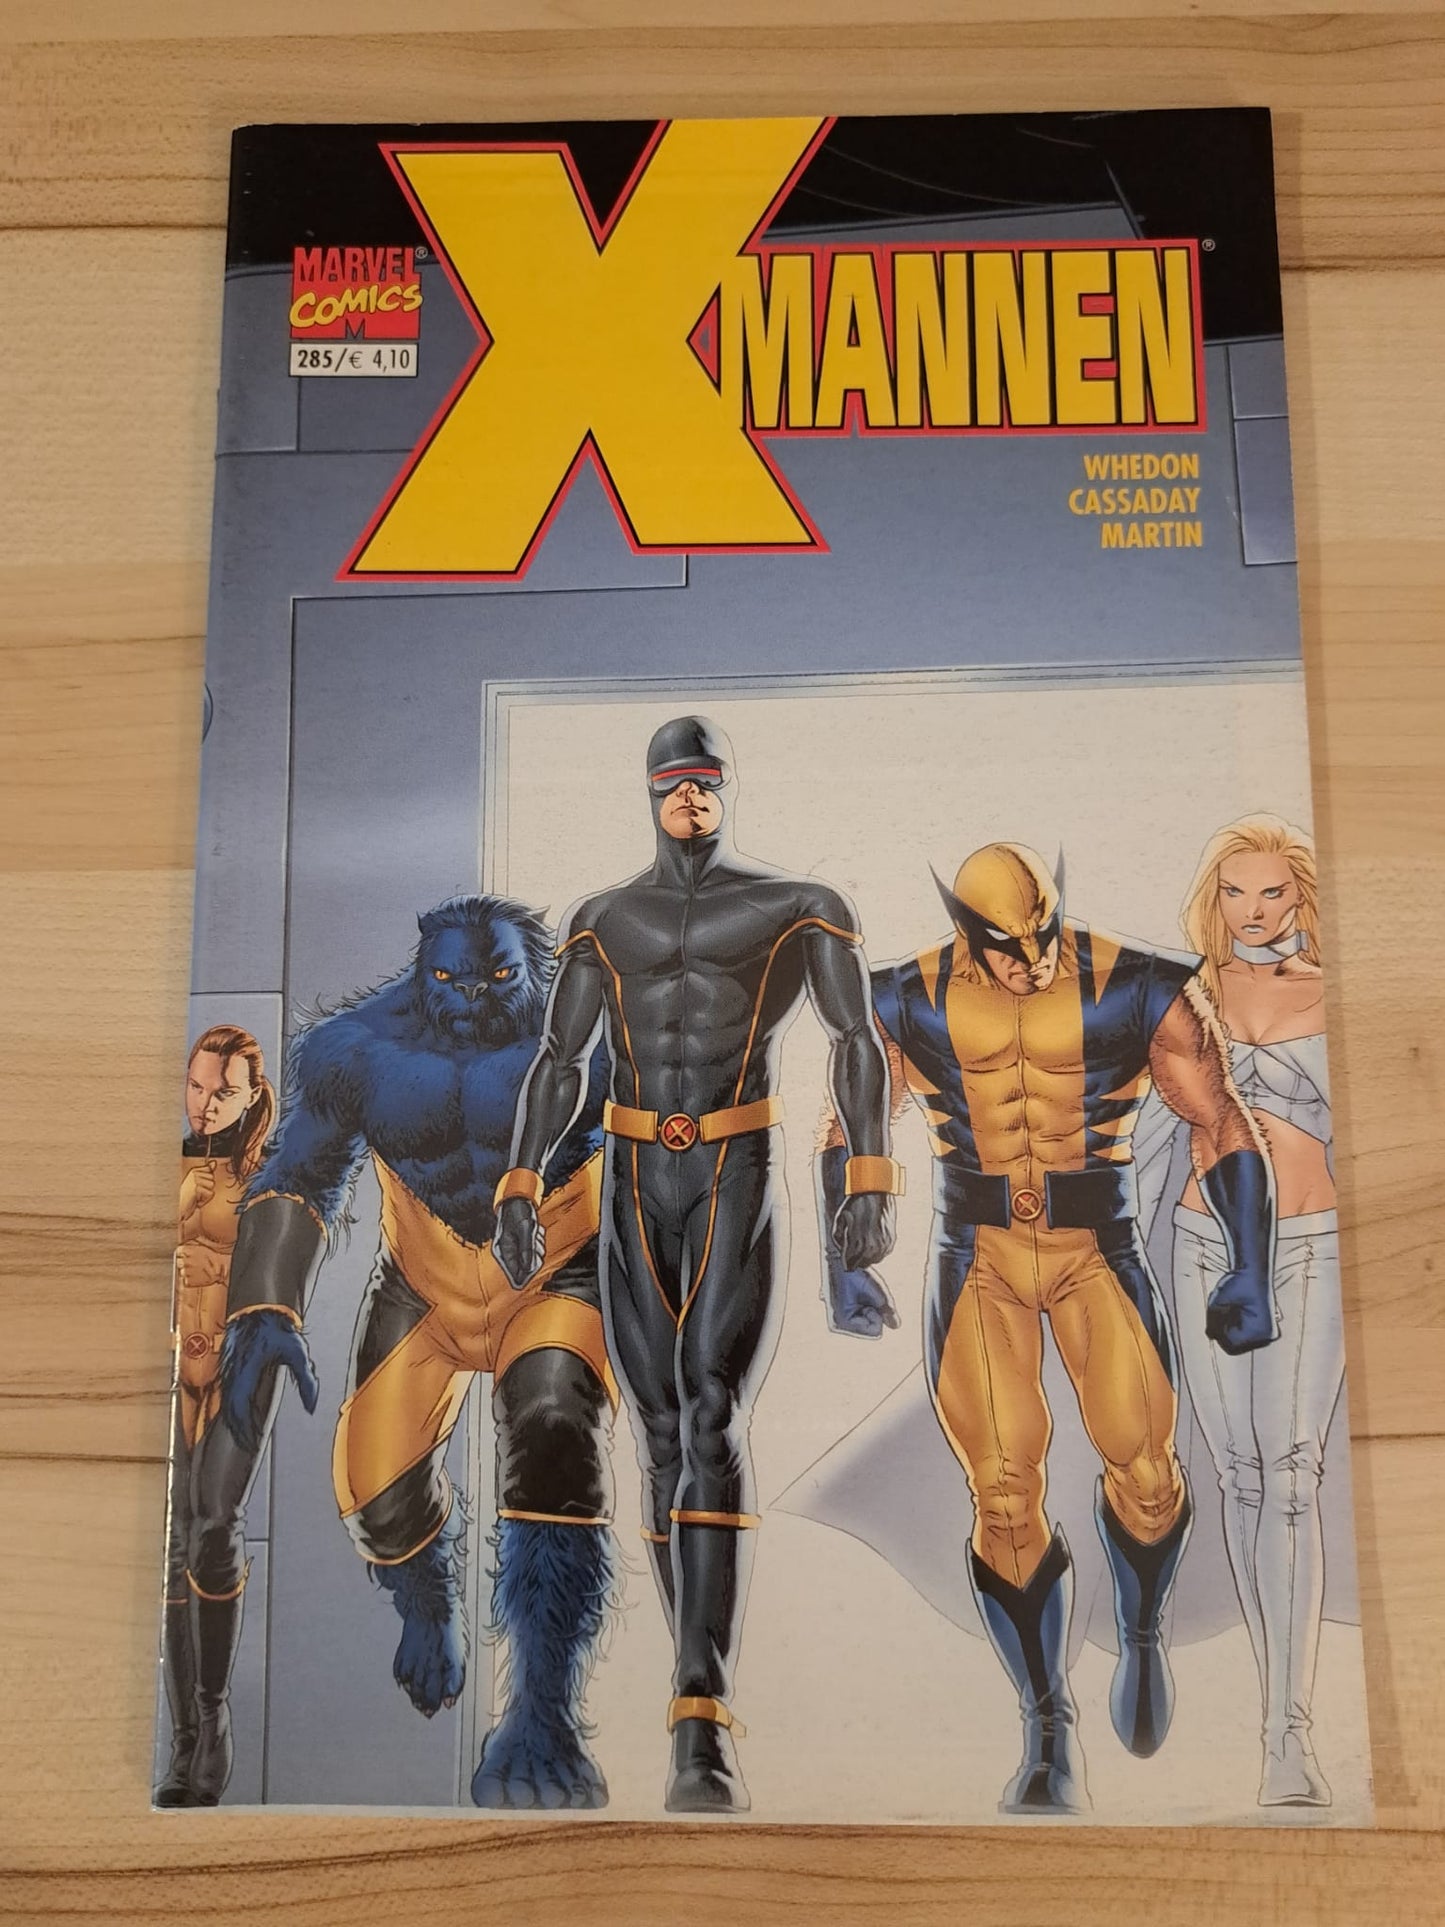 X-mannen #285